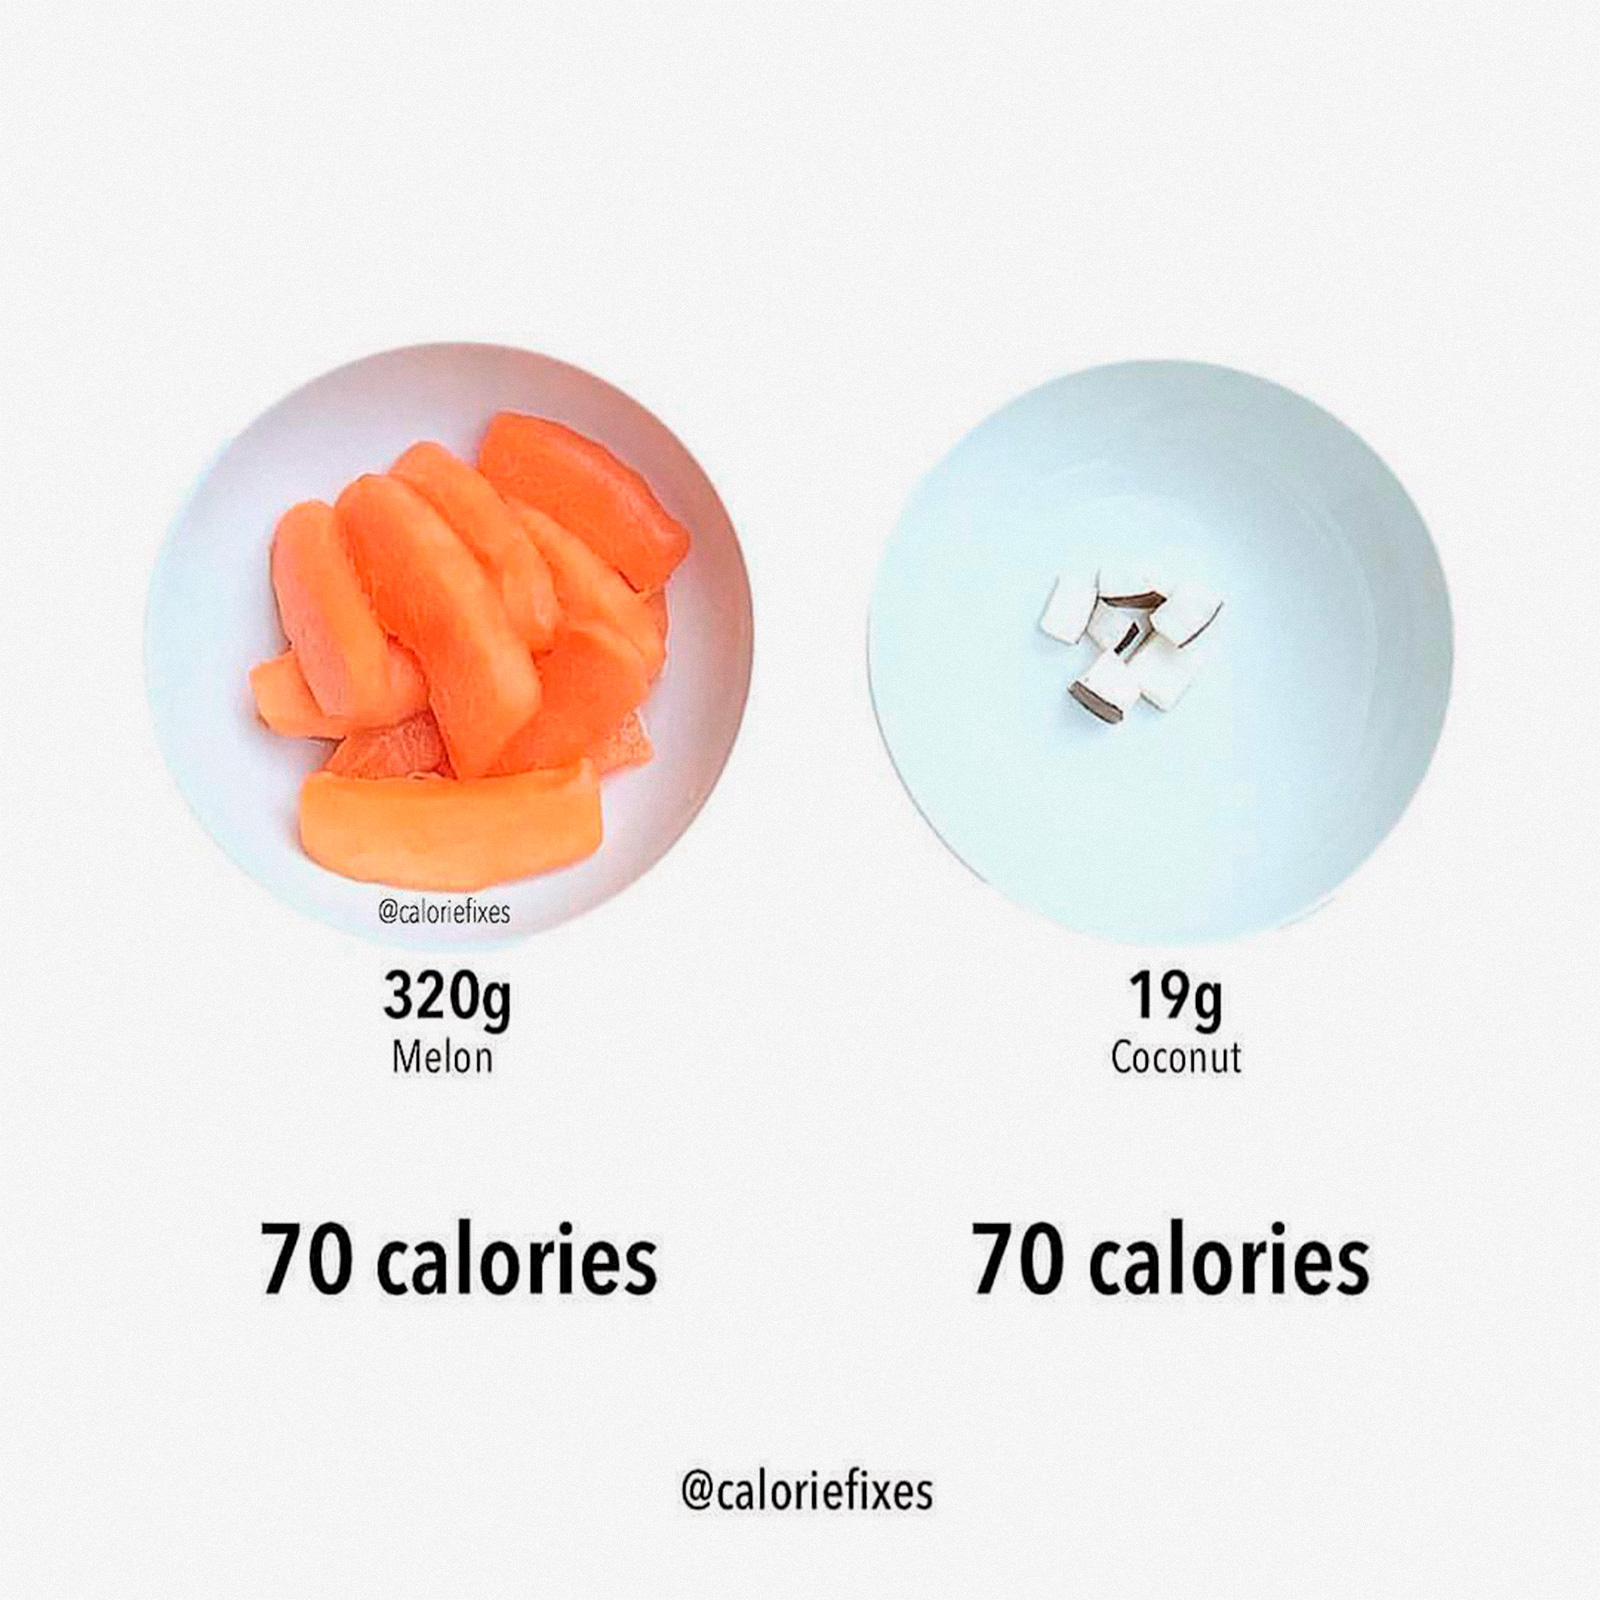 Инстаграм недели: суровая правда о калориях в аккаунте Caloriefixes